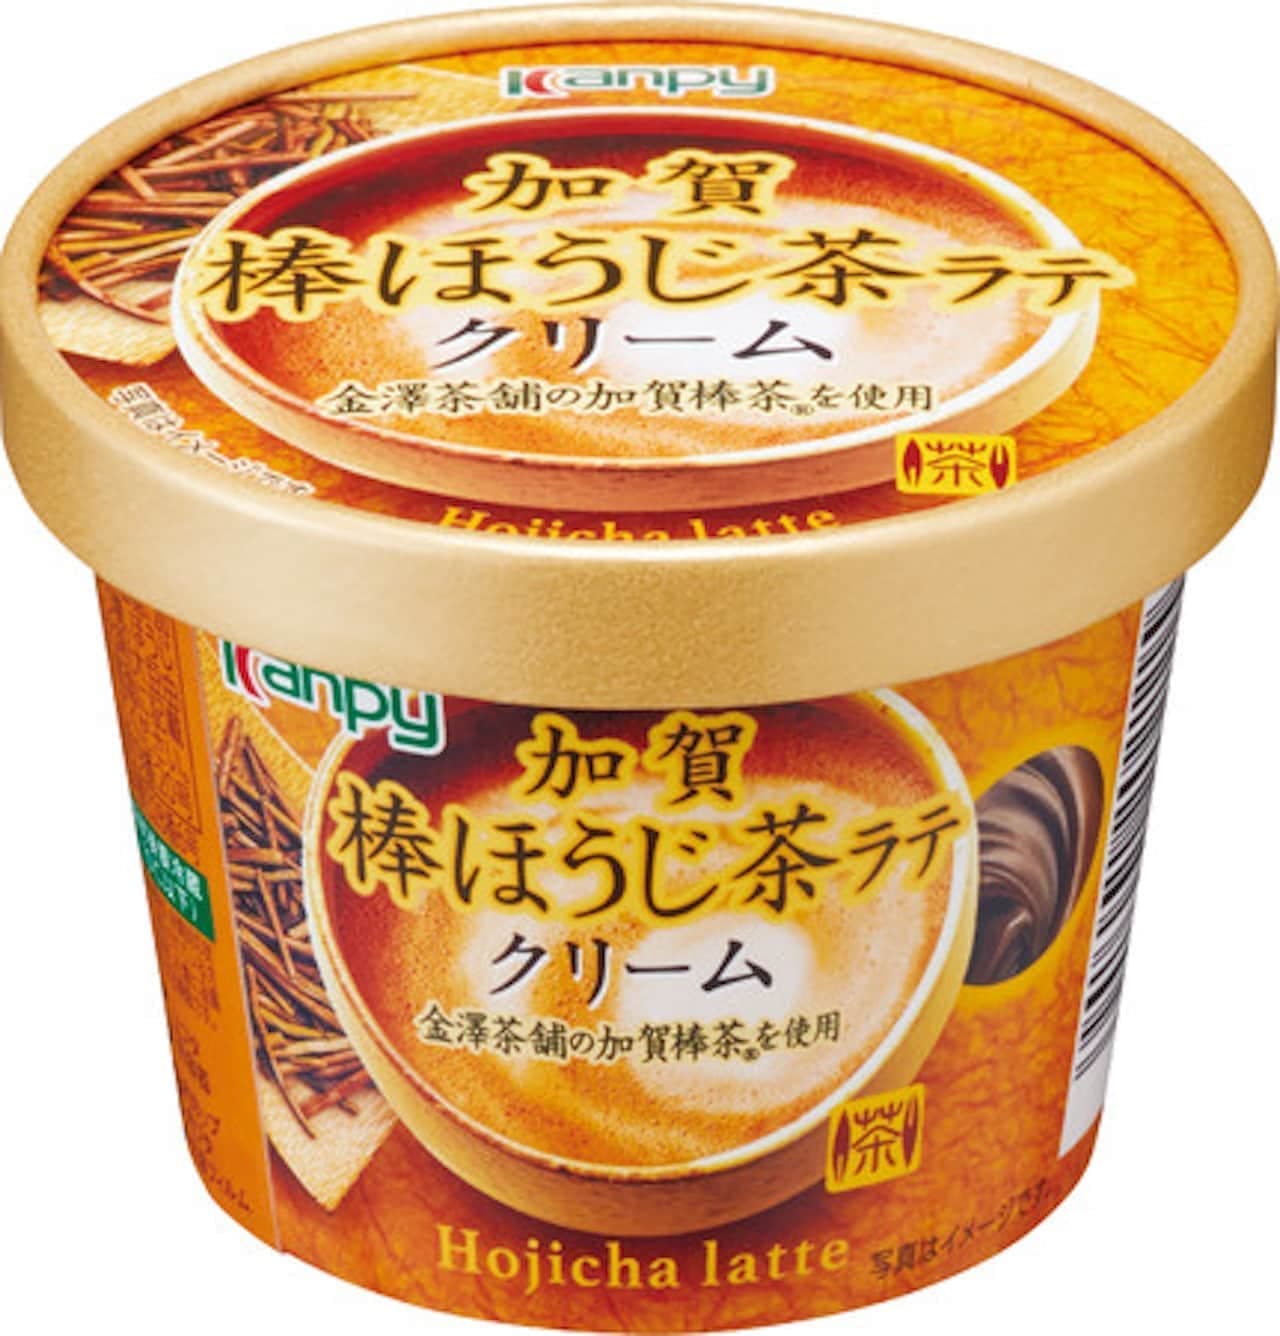 加藤産業「カンピー 加賀棒ほうじ茶ラテクリーム」